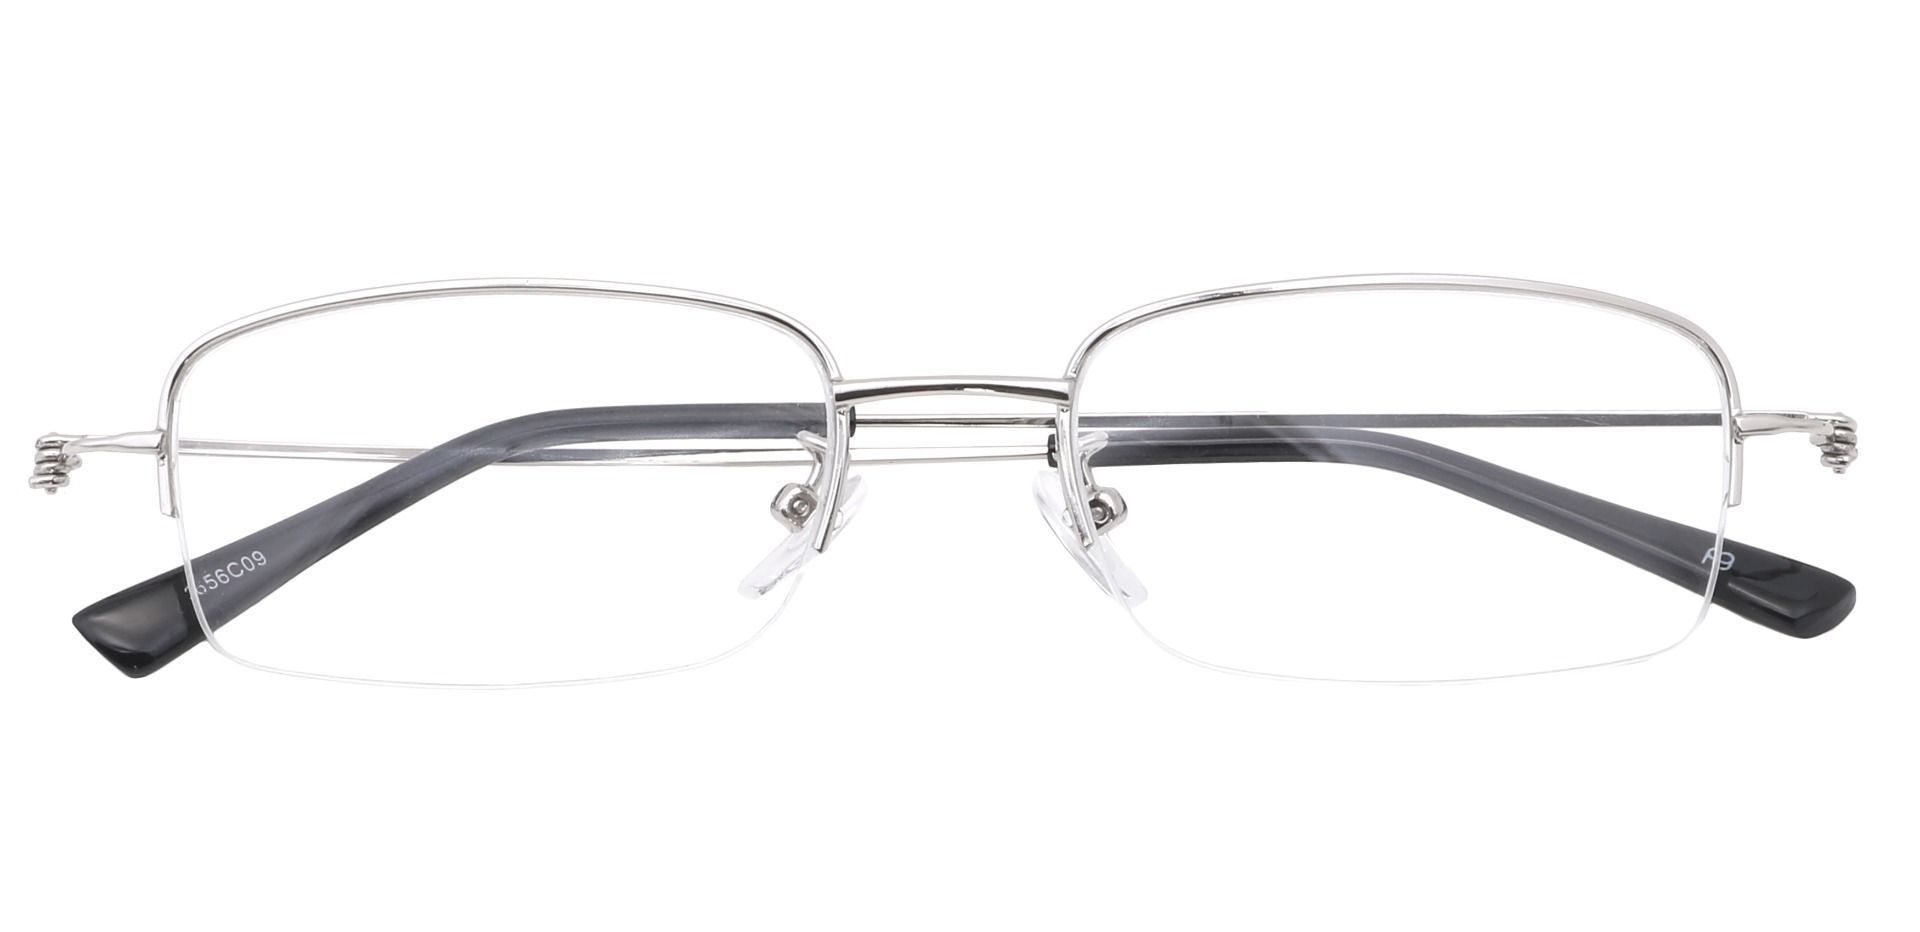 Walton Square Prescription Glasses - Silver   